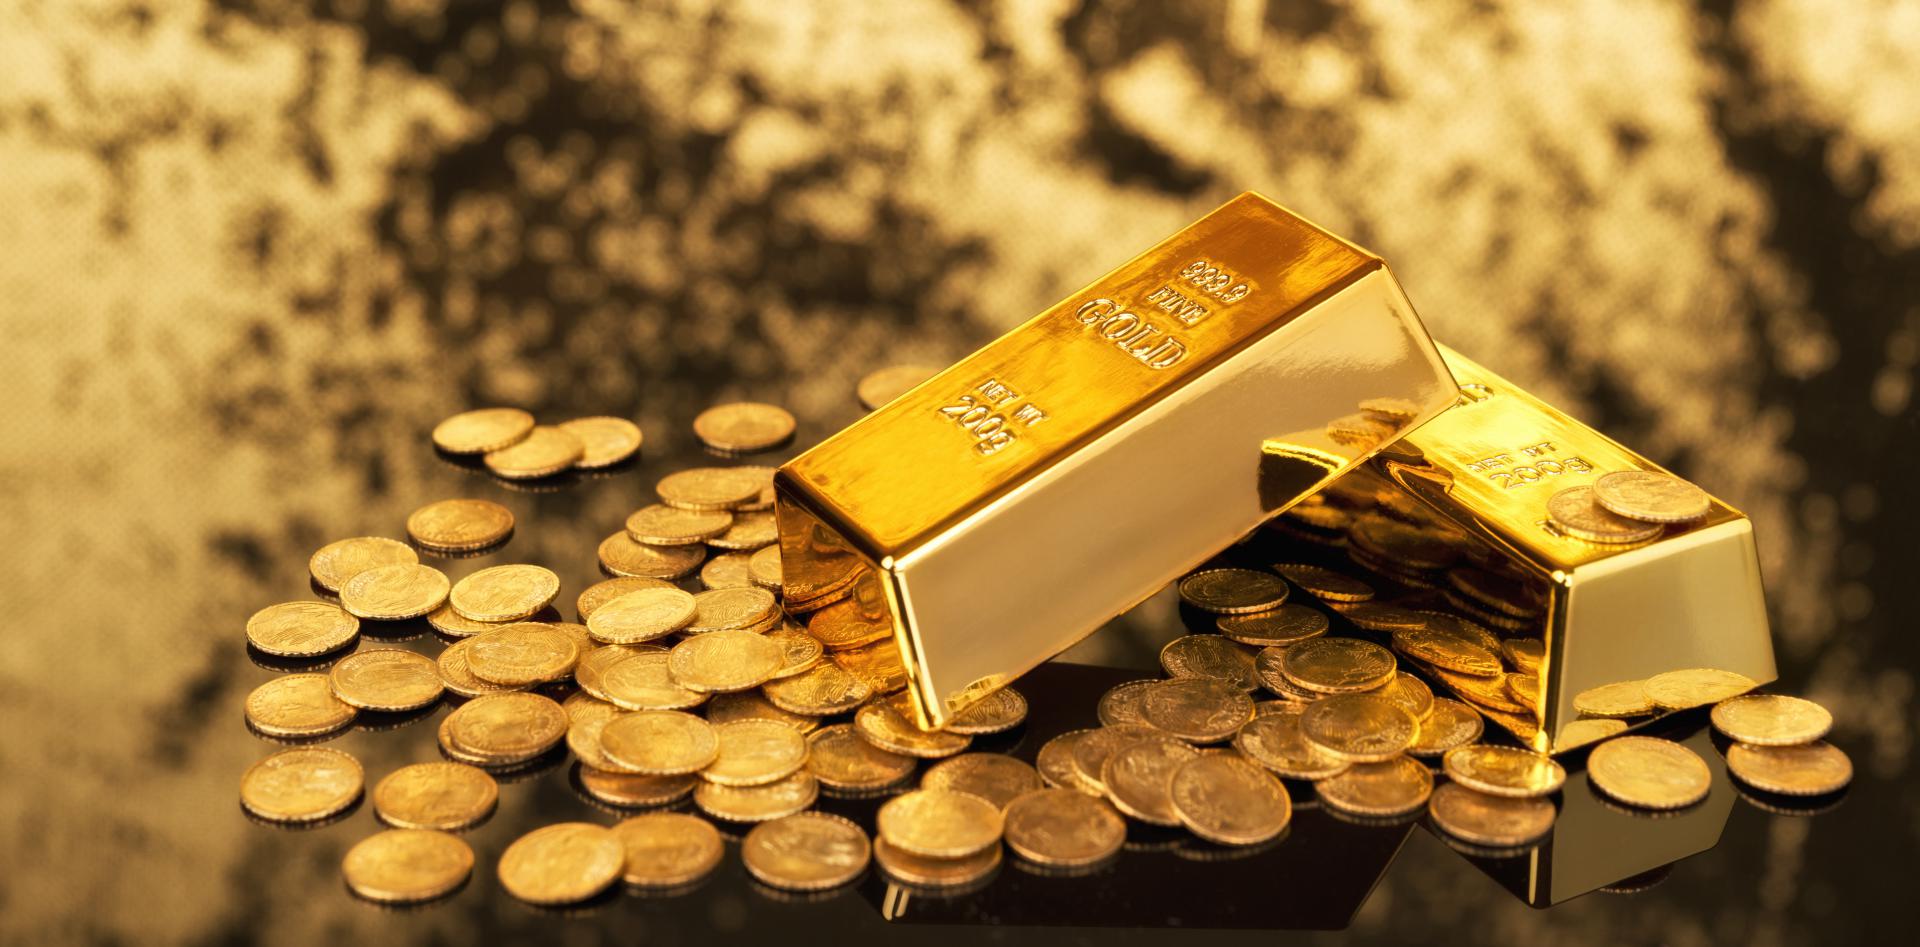 Slobodna Dalmacija - Hrvatska nema ni grama zalihe zlata, dok ga Srbija ima  više od 19 tona! Stručnjaci kažu da je to rizik za zemlju u slučaju krize,  ali HNB na sve